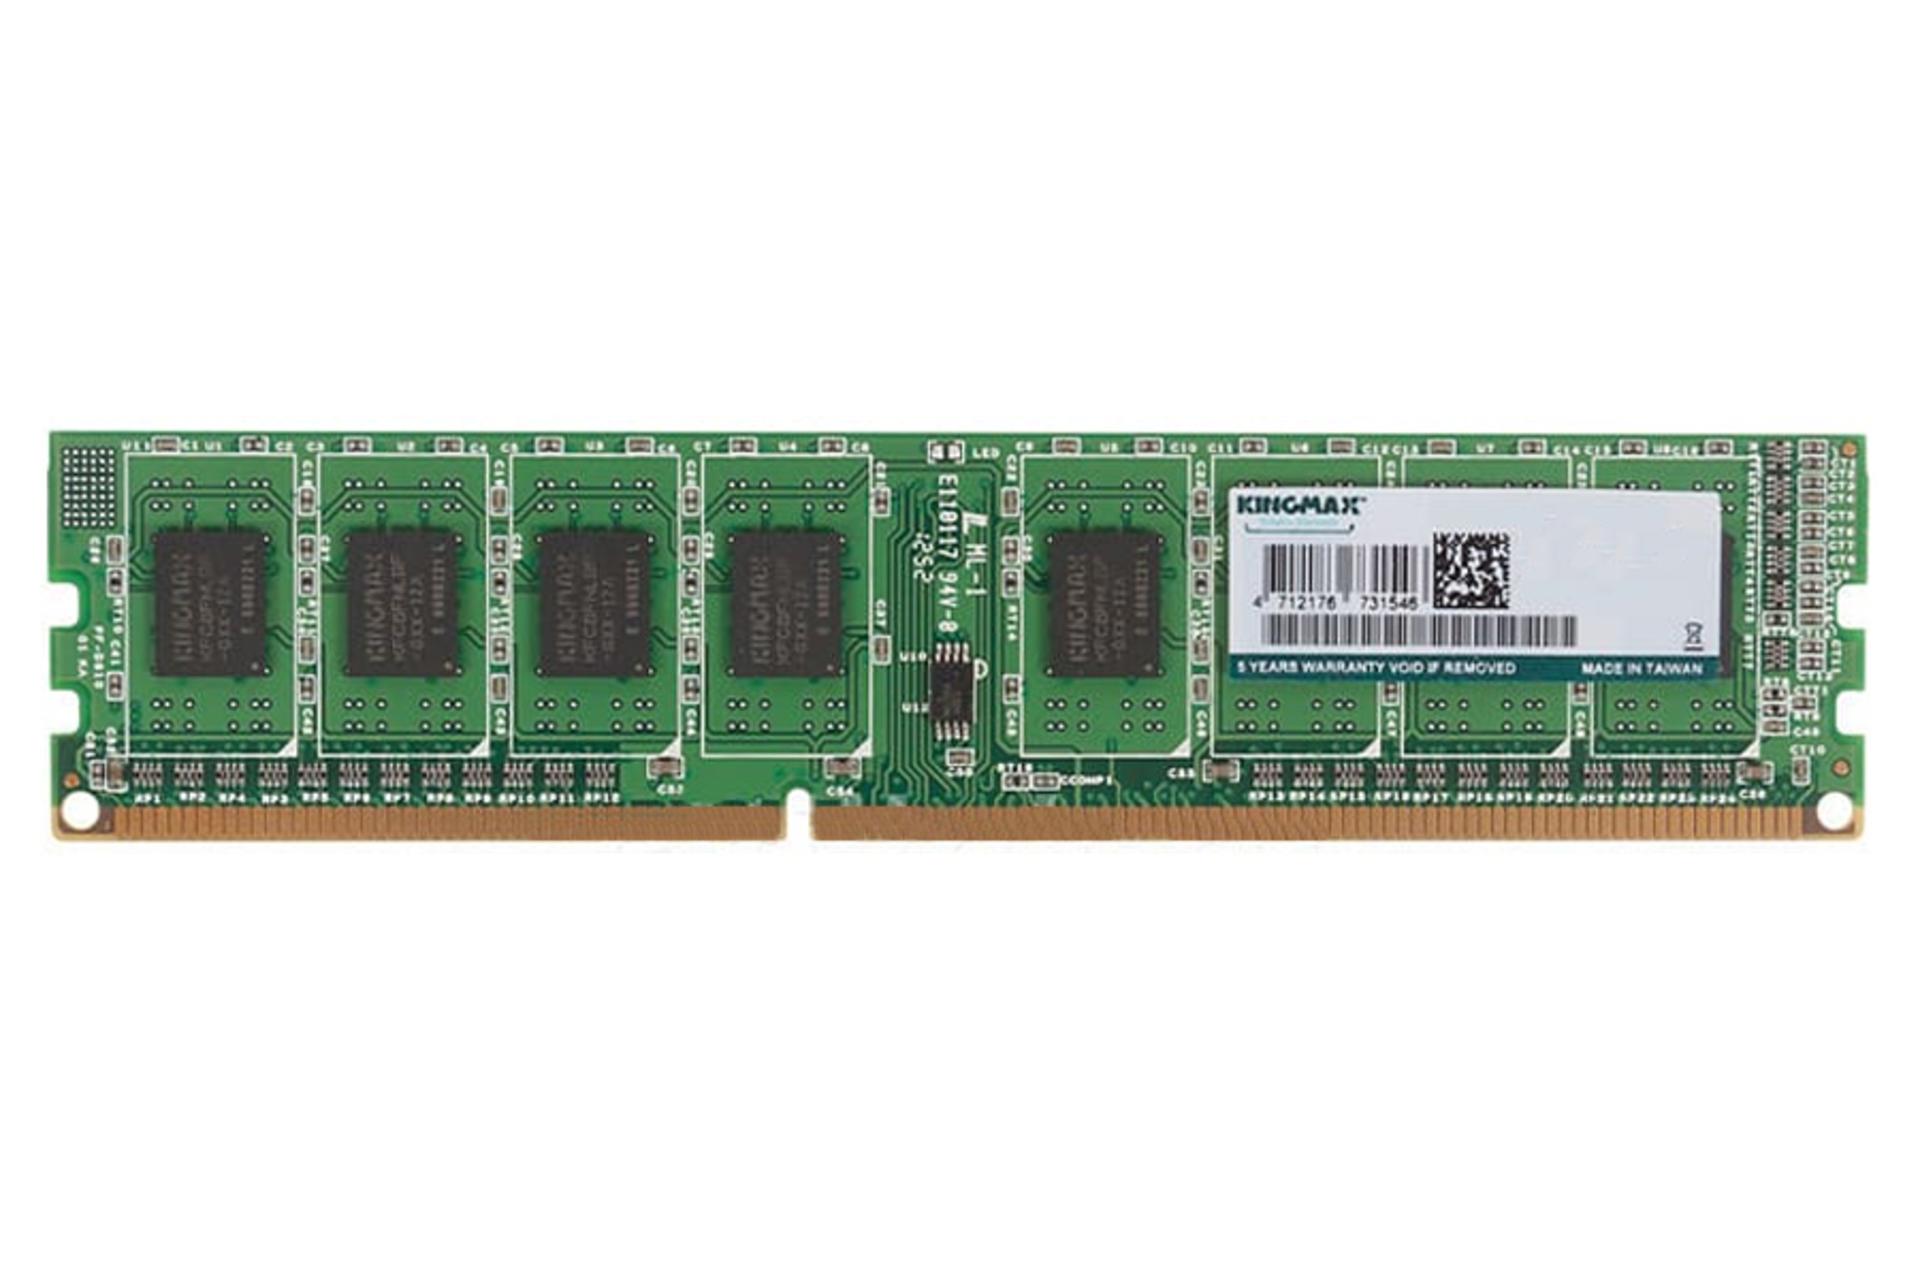 رم کینگ مکس دسکتاپ ظرفیت 4 گیگابایت از نوع DDR3-1600